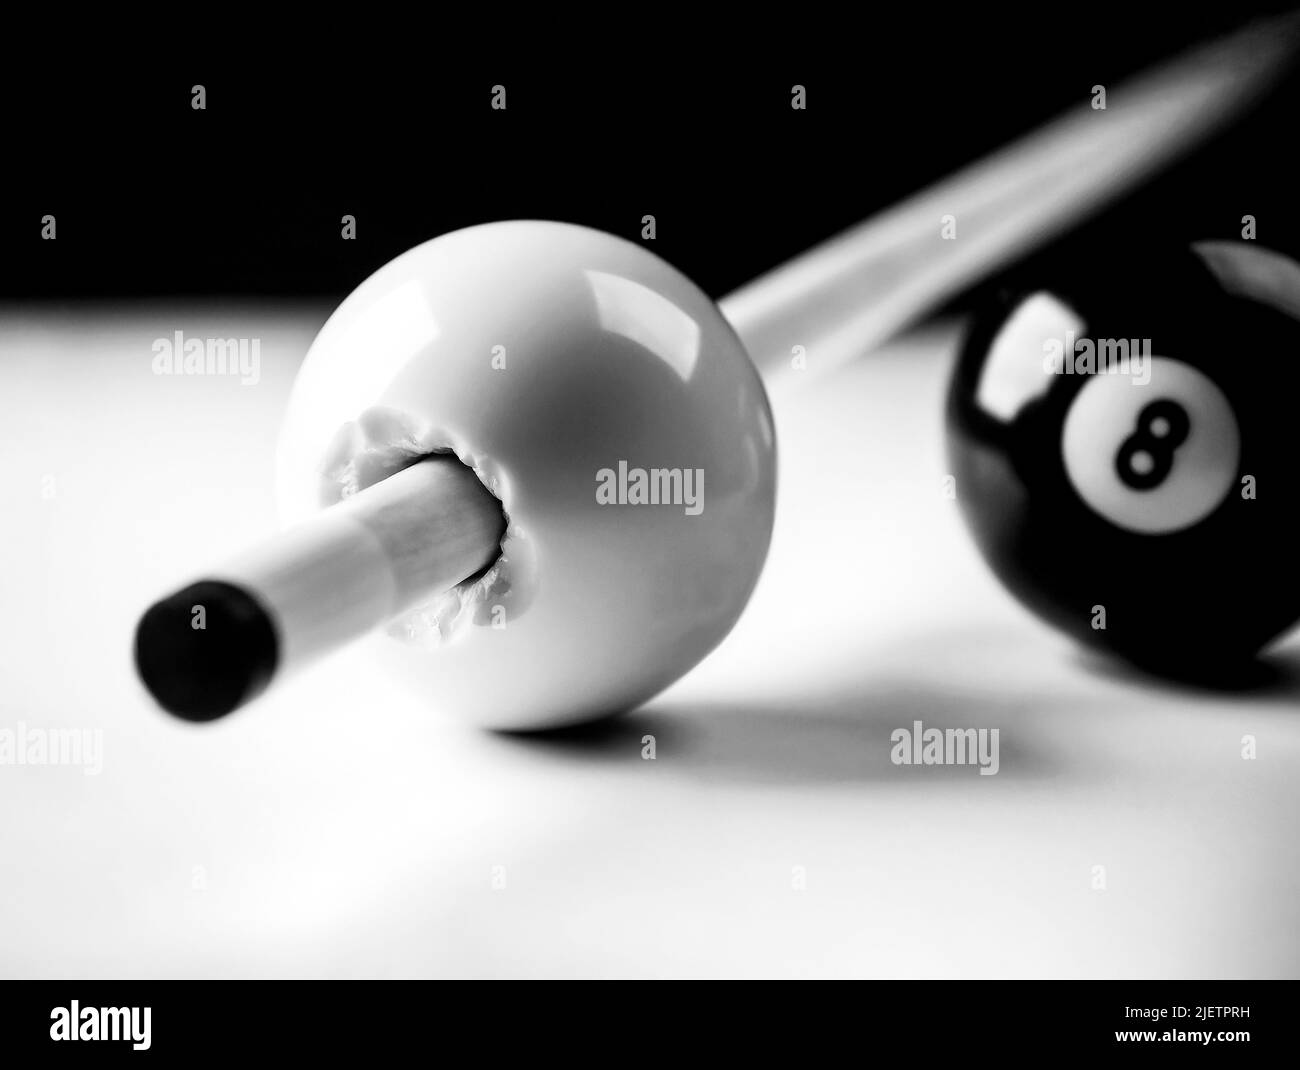 Queue-Stick bricht durch einen Cueball mit acht Ball im Hintergrund, realistische Fotografie Stockfoto